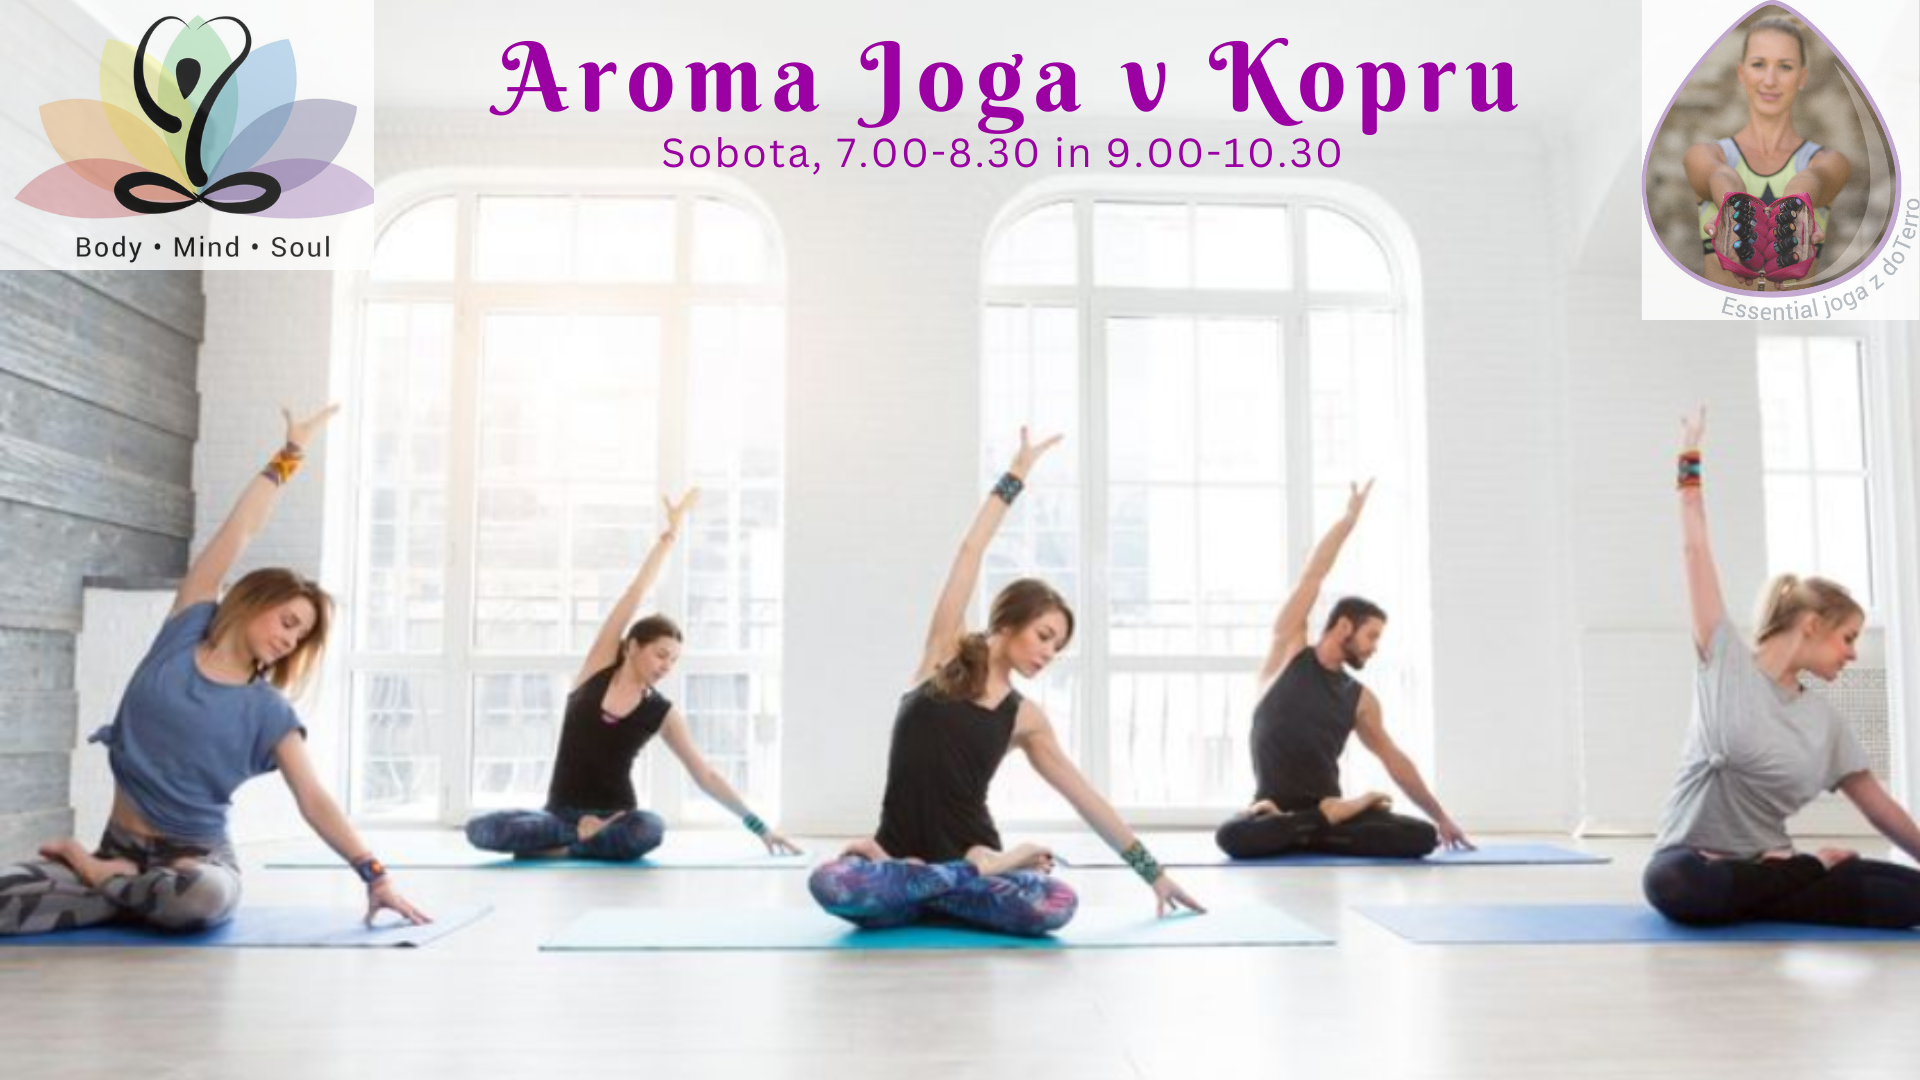 Aroma joga v Kopru